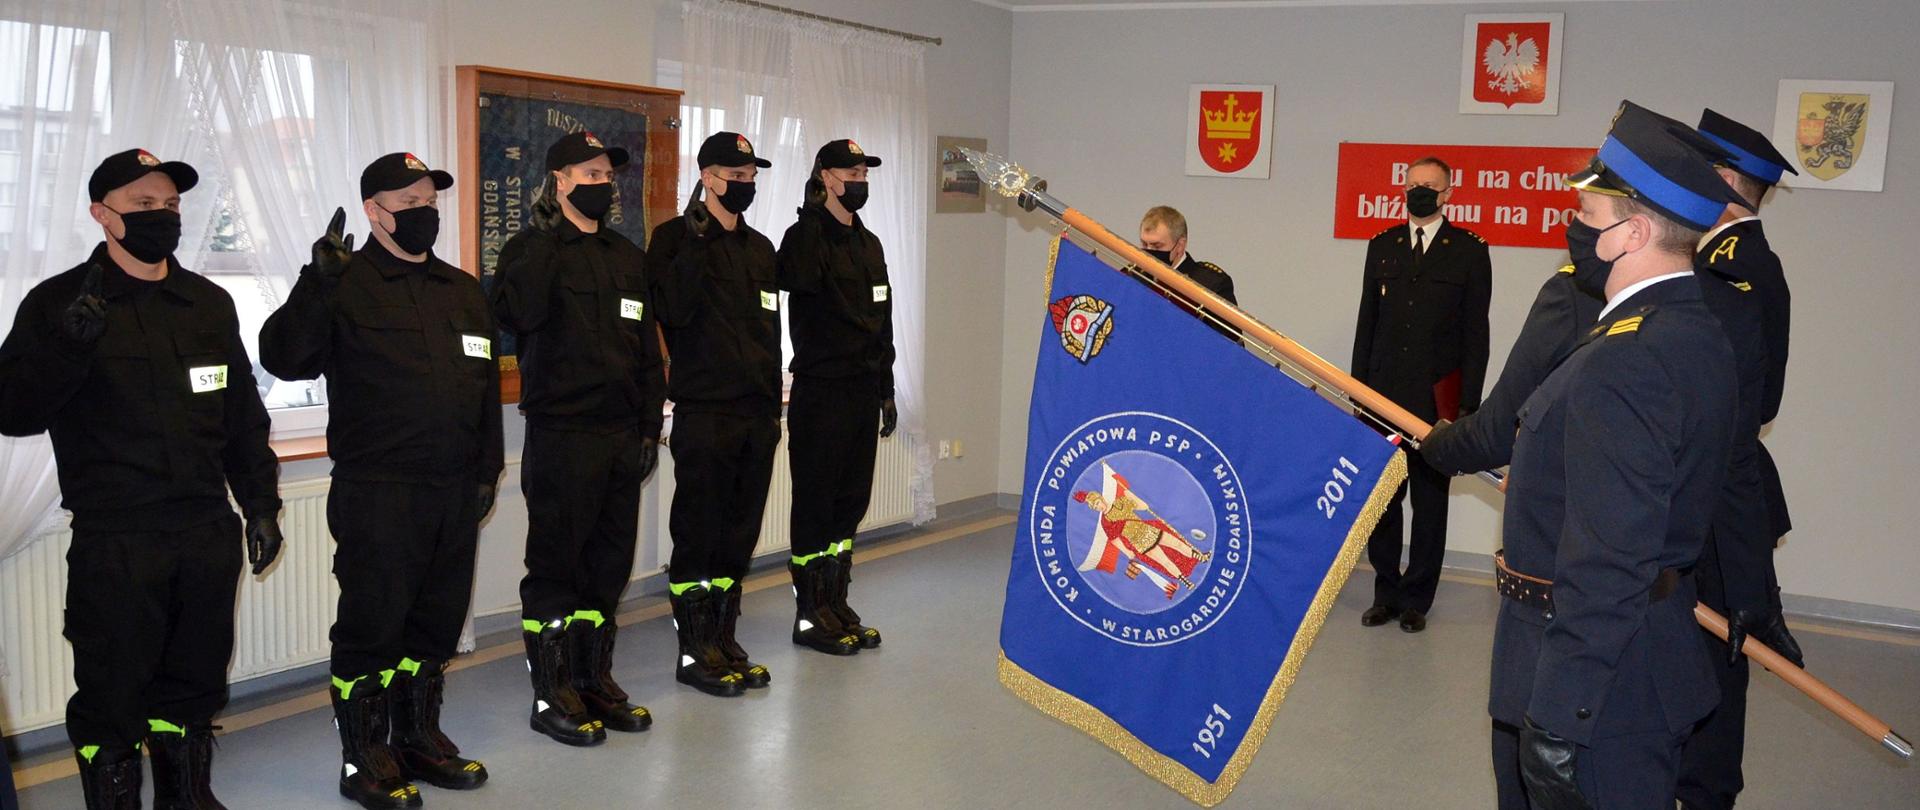 Zdjęcie przedstawia moment składania przysięgi przez nowo przyjętych do pracy strażaków. Widać poczet sztandarowy i kierownictwo komendy.